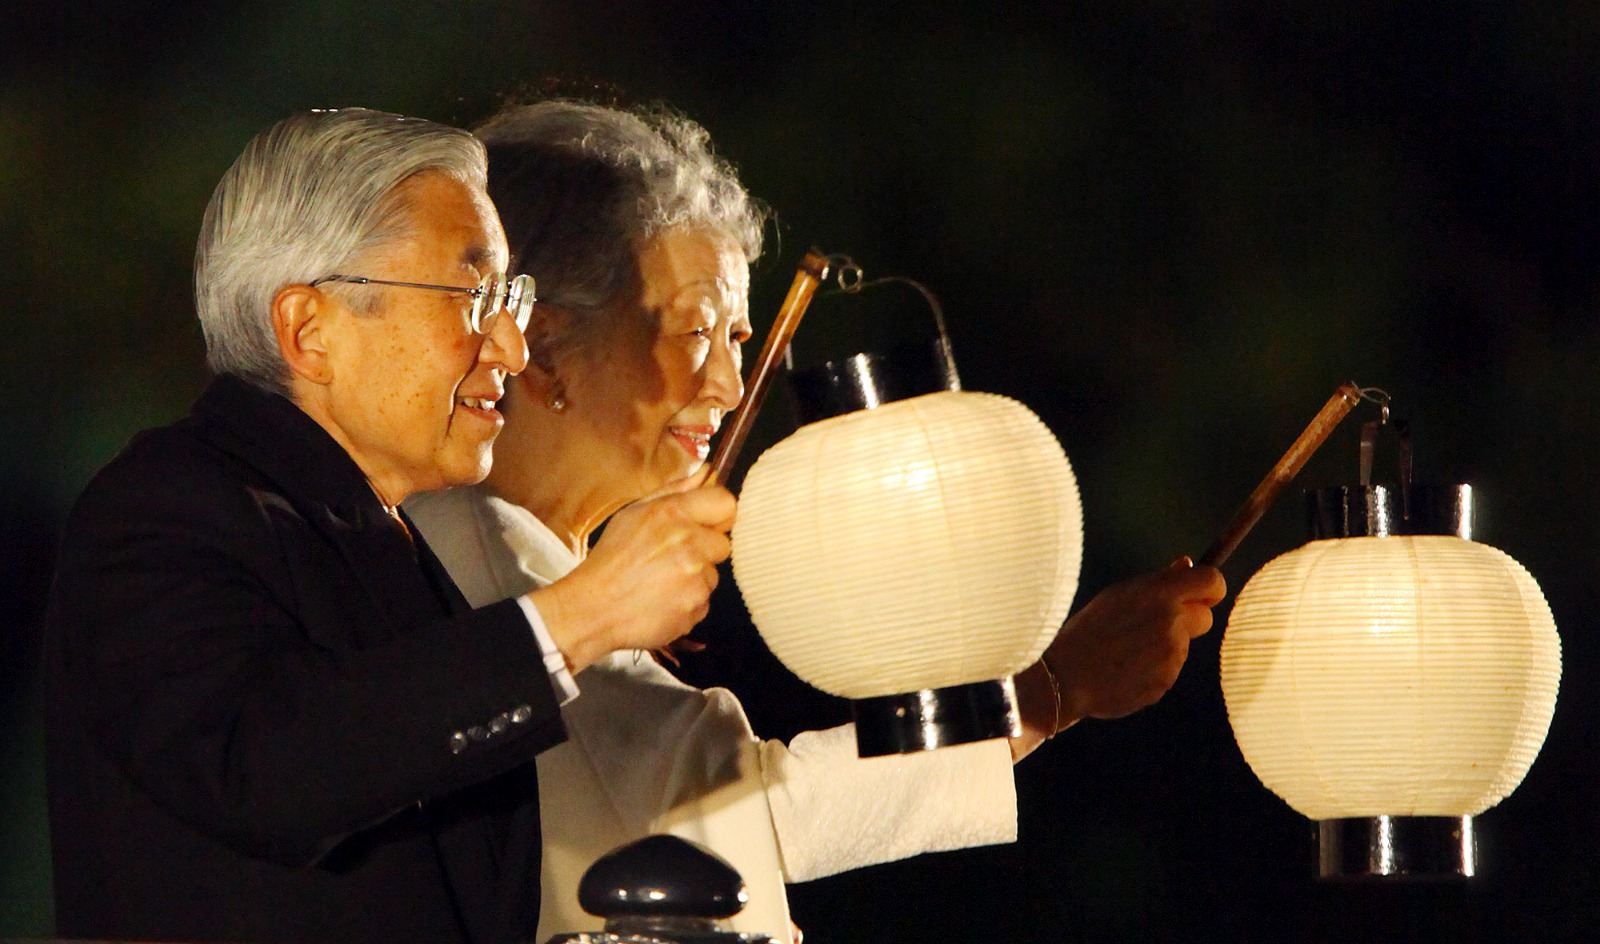 الإمبراطور أكيهيتو والإمبراطورة ميتشيكو يحضران فعالية للاحتفال بالذكرى العشرين لاعتلاء الإمبراطور العرش في طوكيو في 12 نوفمبر 2009.